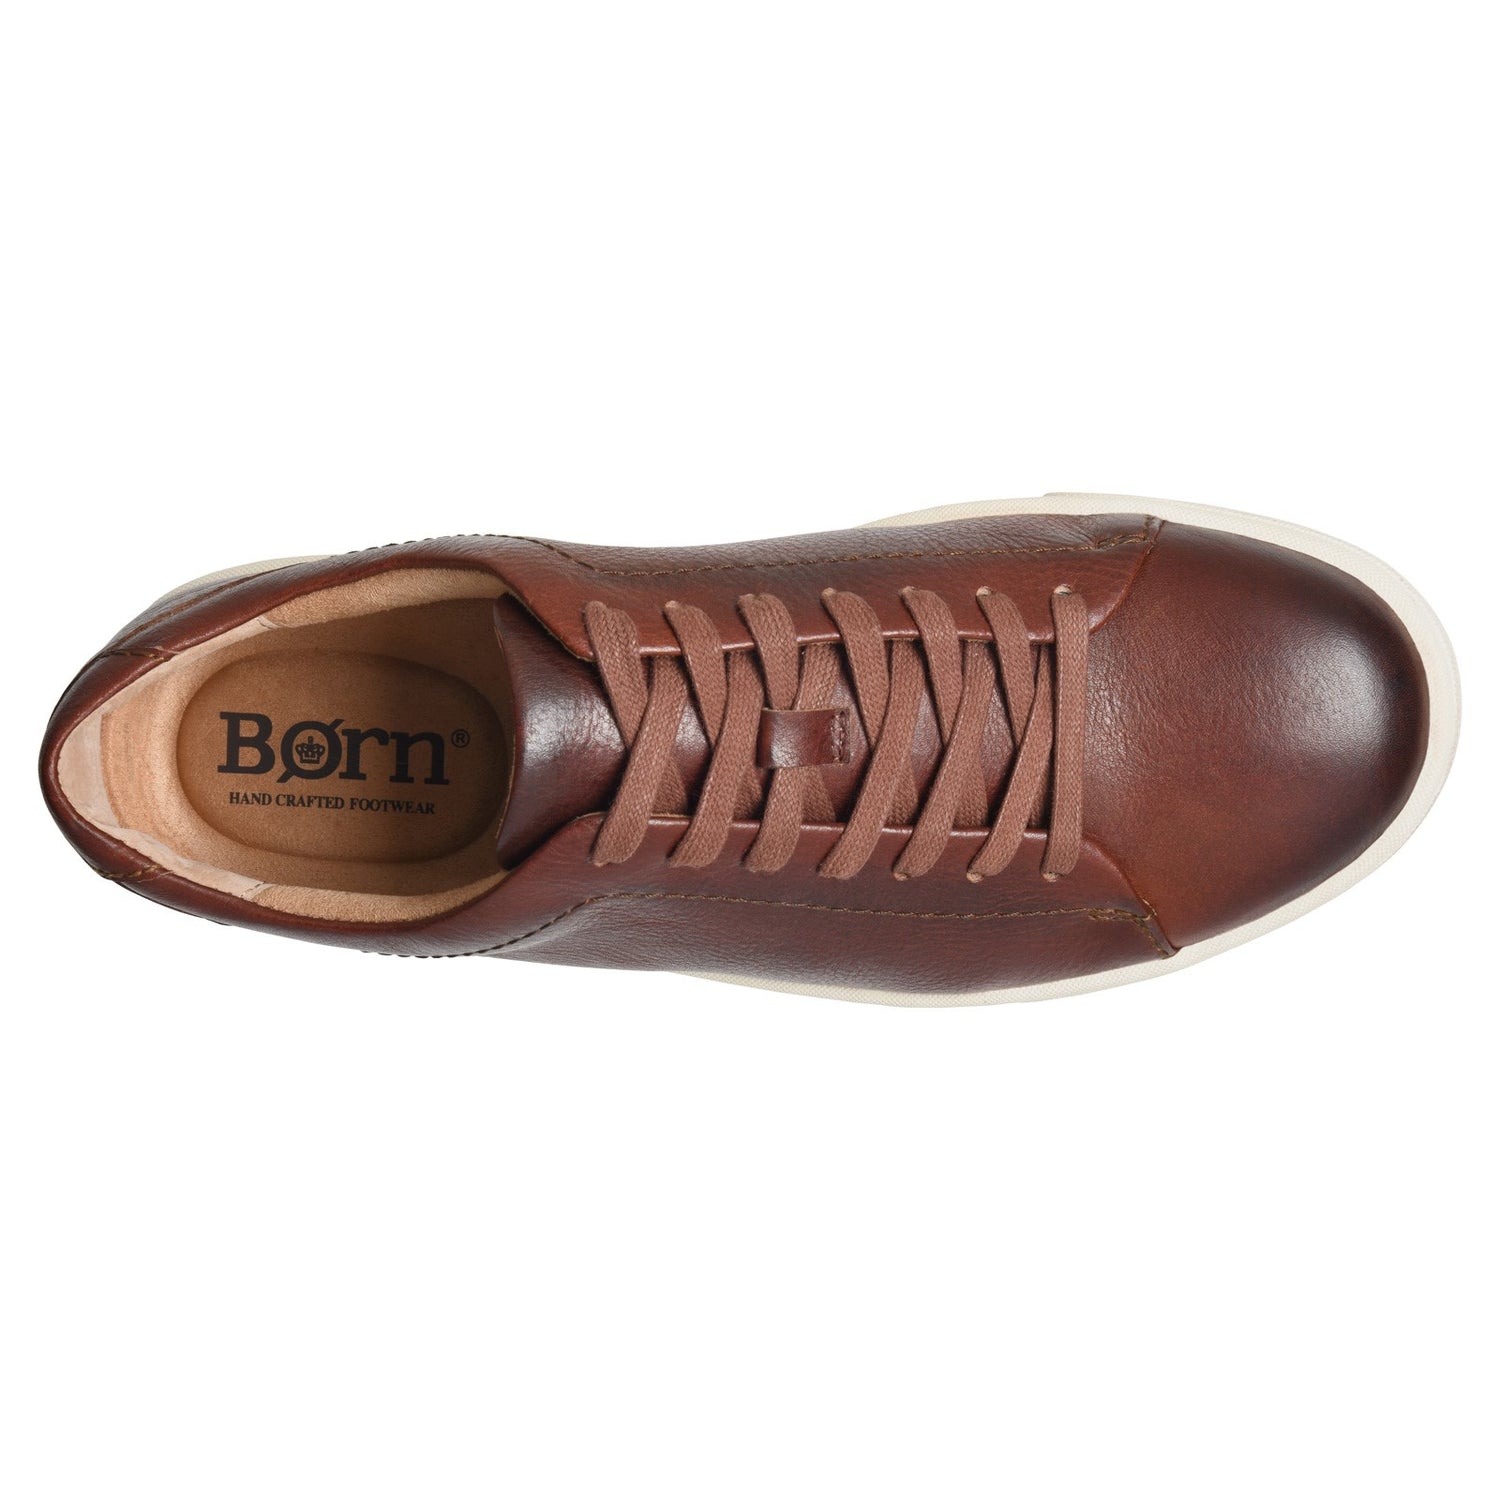 Peltz Shoes  Men's Born Allegheny II Sneaker Dark Tan BM0010825